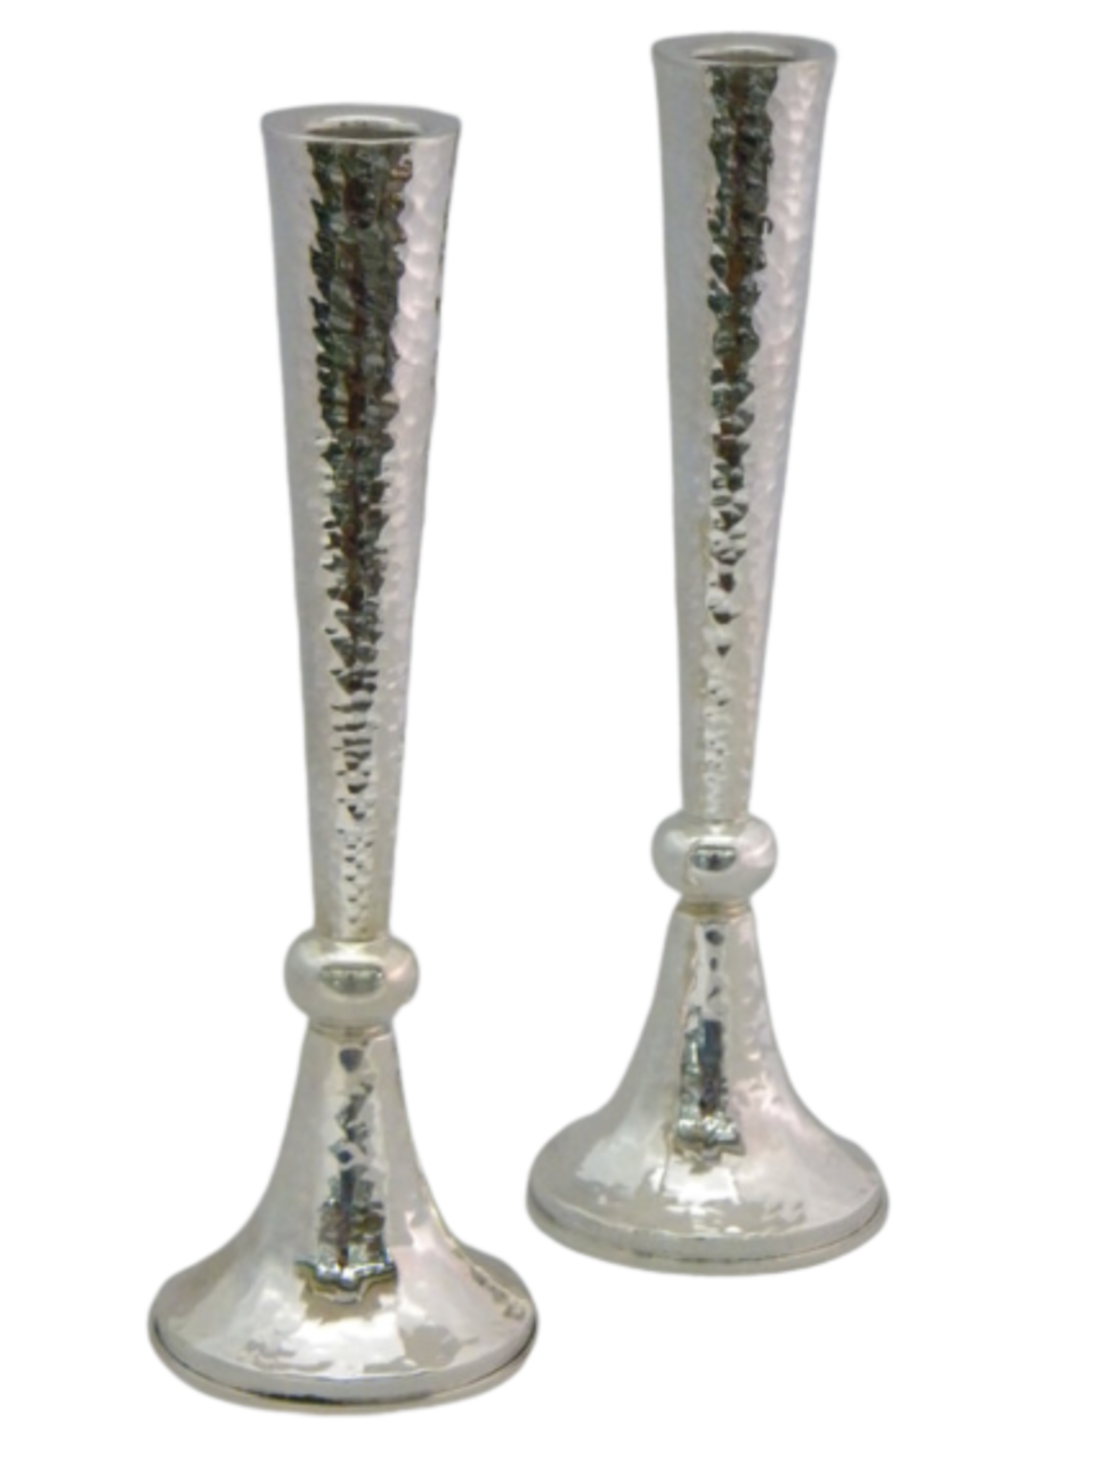 Hammer skirt candlesticks in several sizes